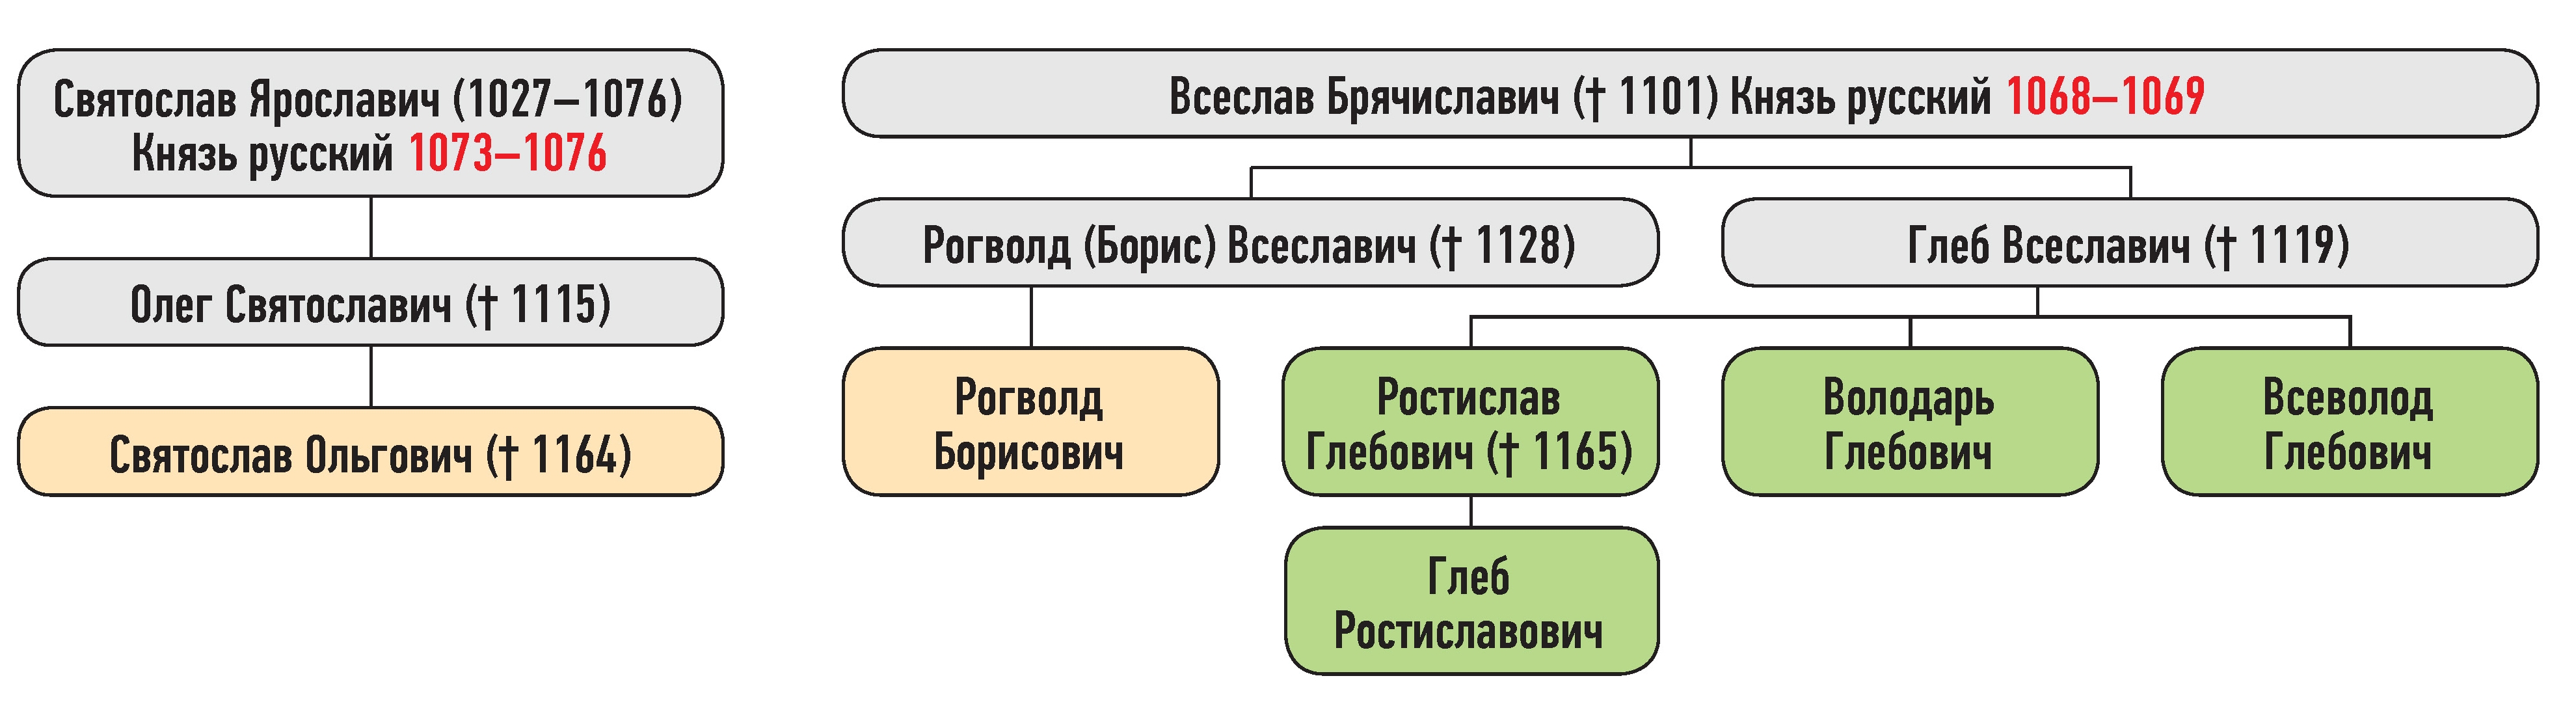 Генеалогическая схема к усобице Рогволода Борисовича и Святослава Ольговича в 1158 г.